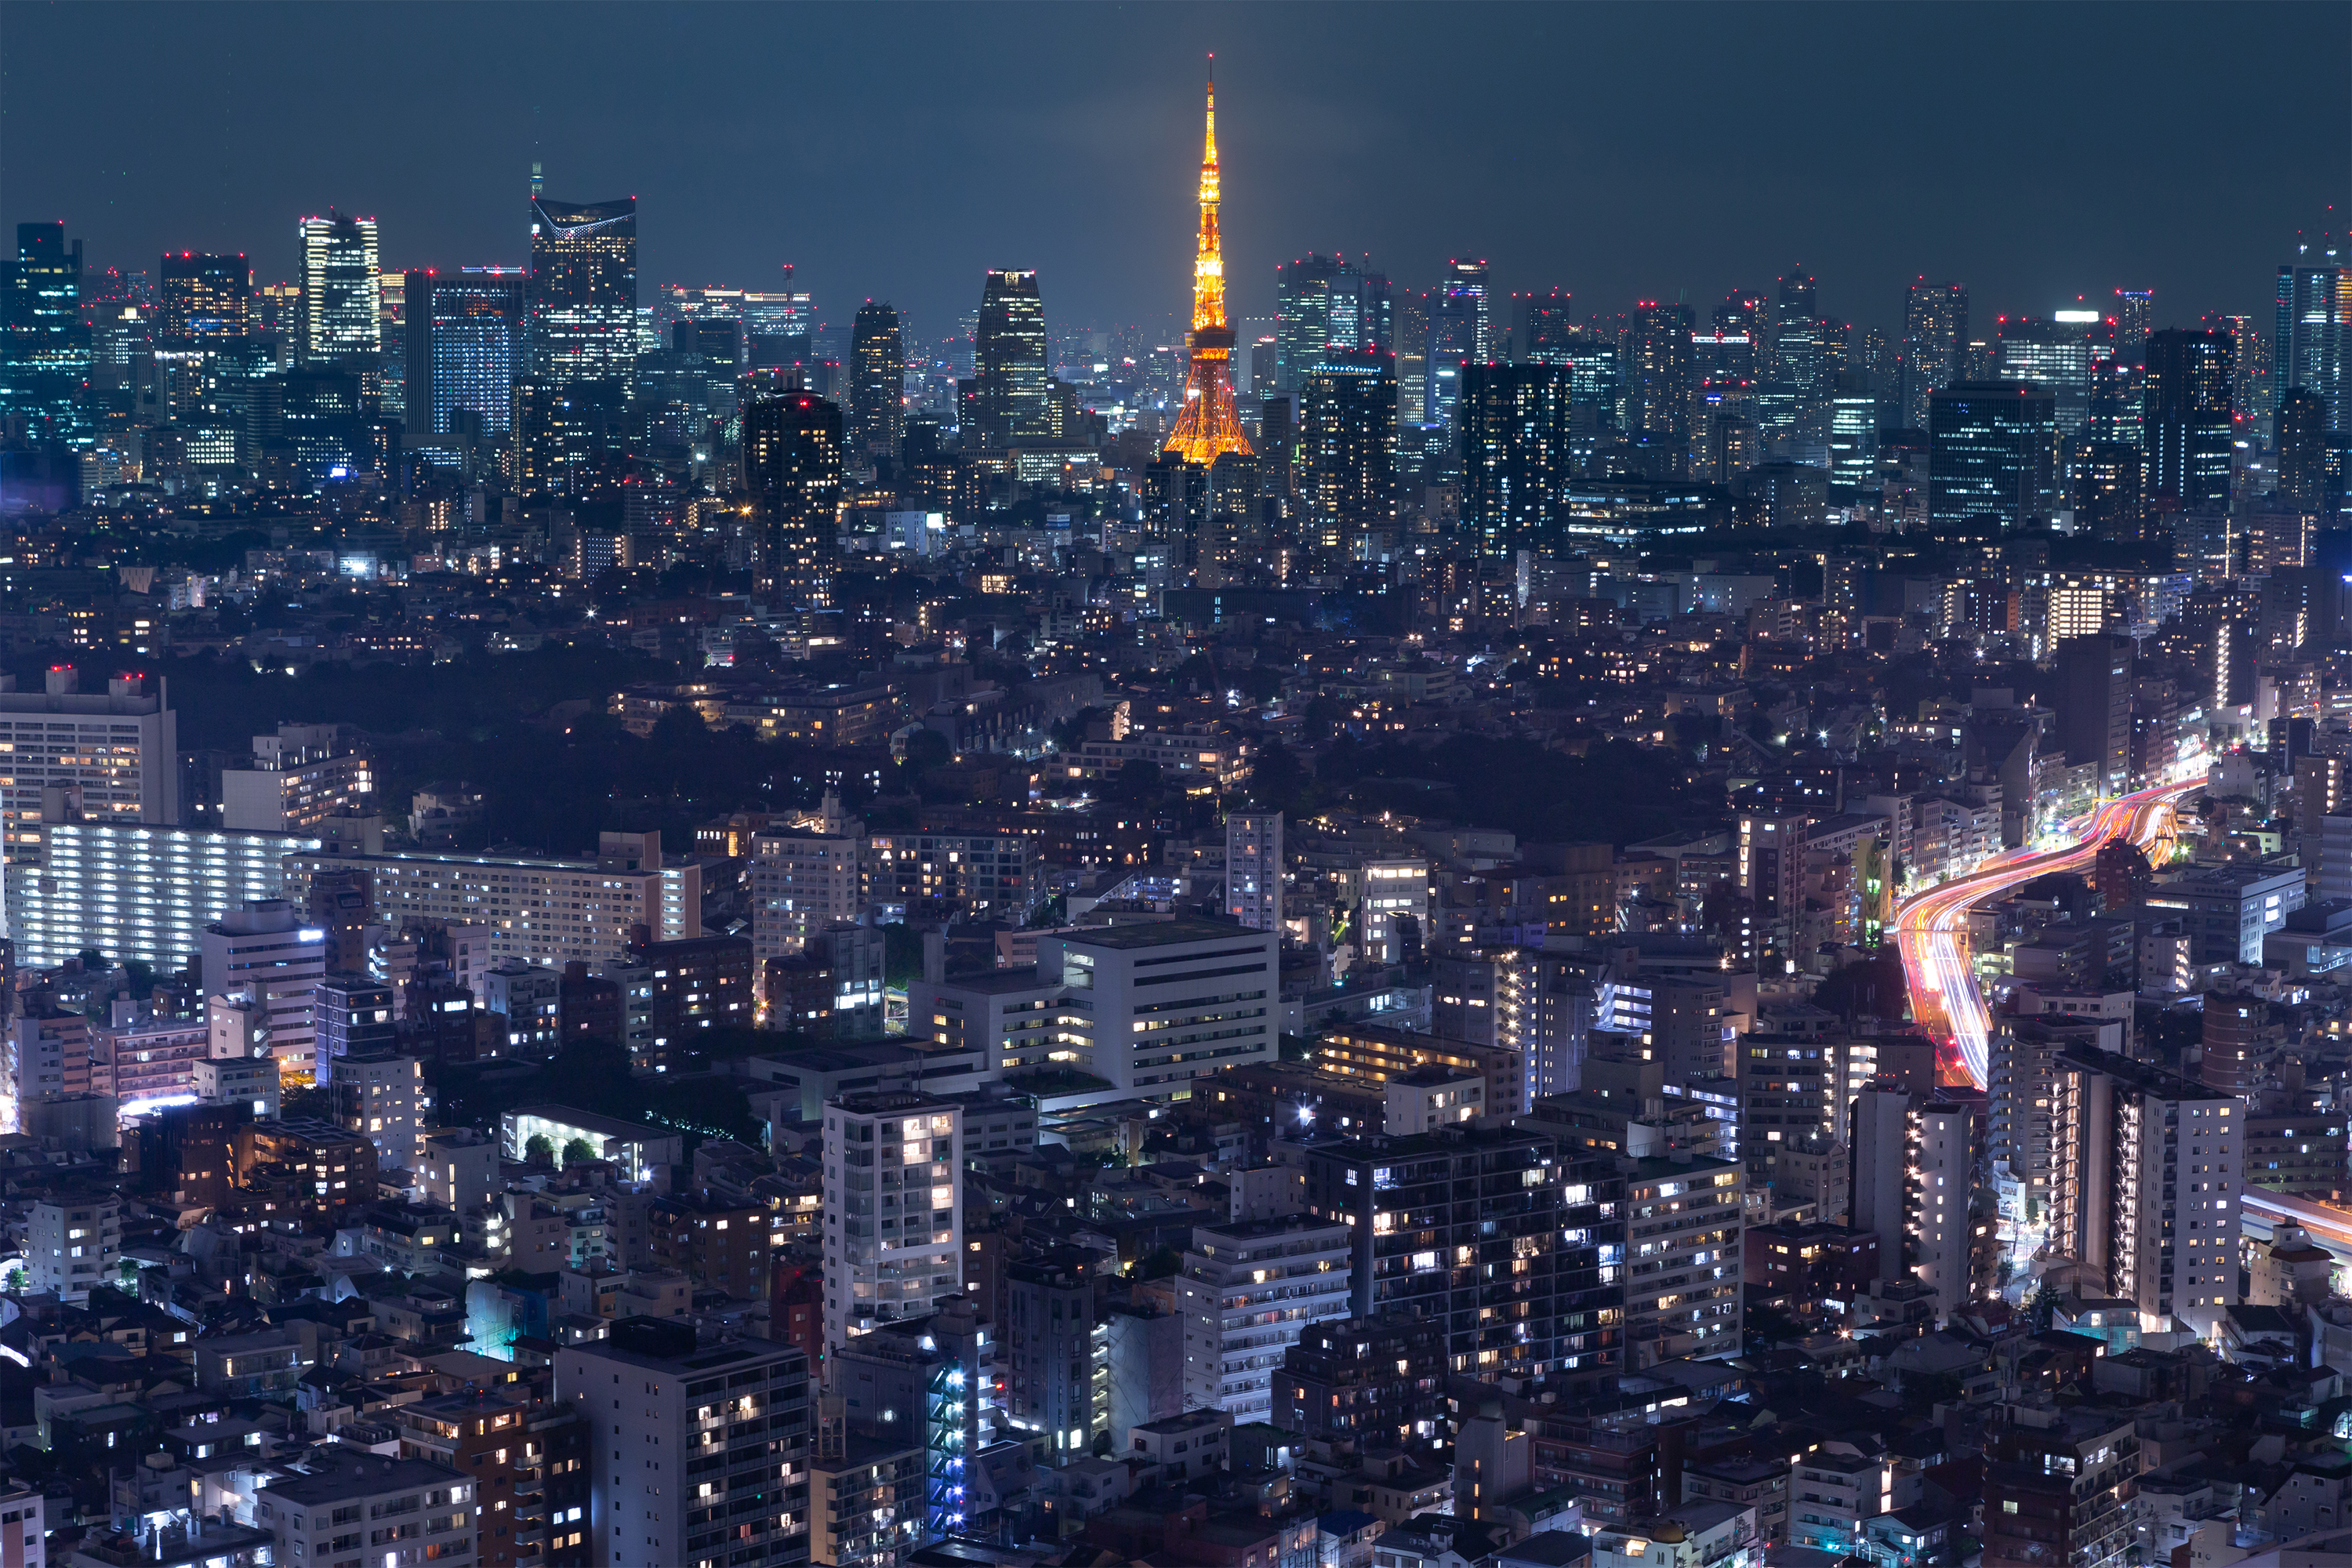 東京タワーと夜景03 無料の高画質フリー写真素材 イメージズラボ